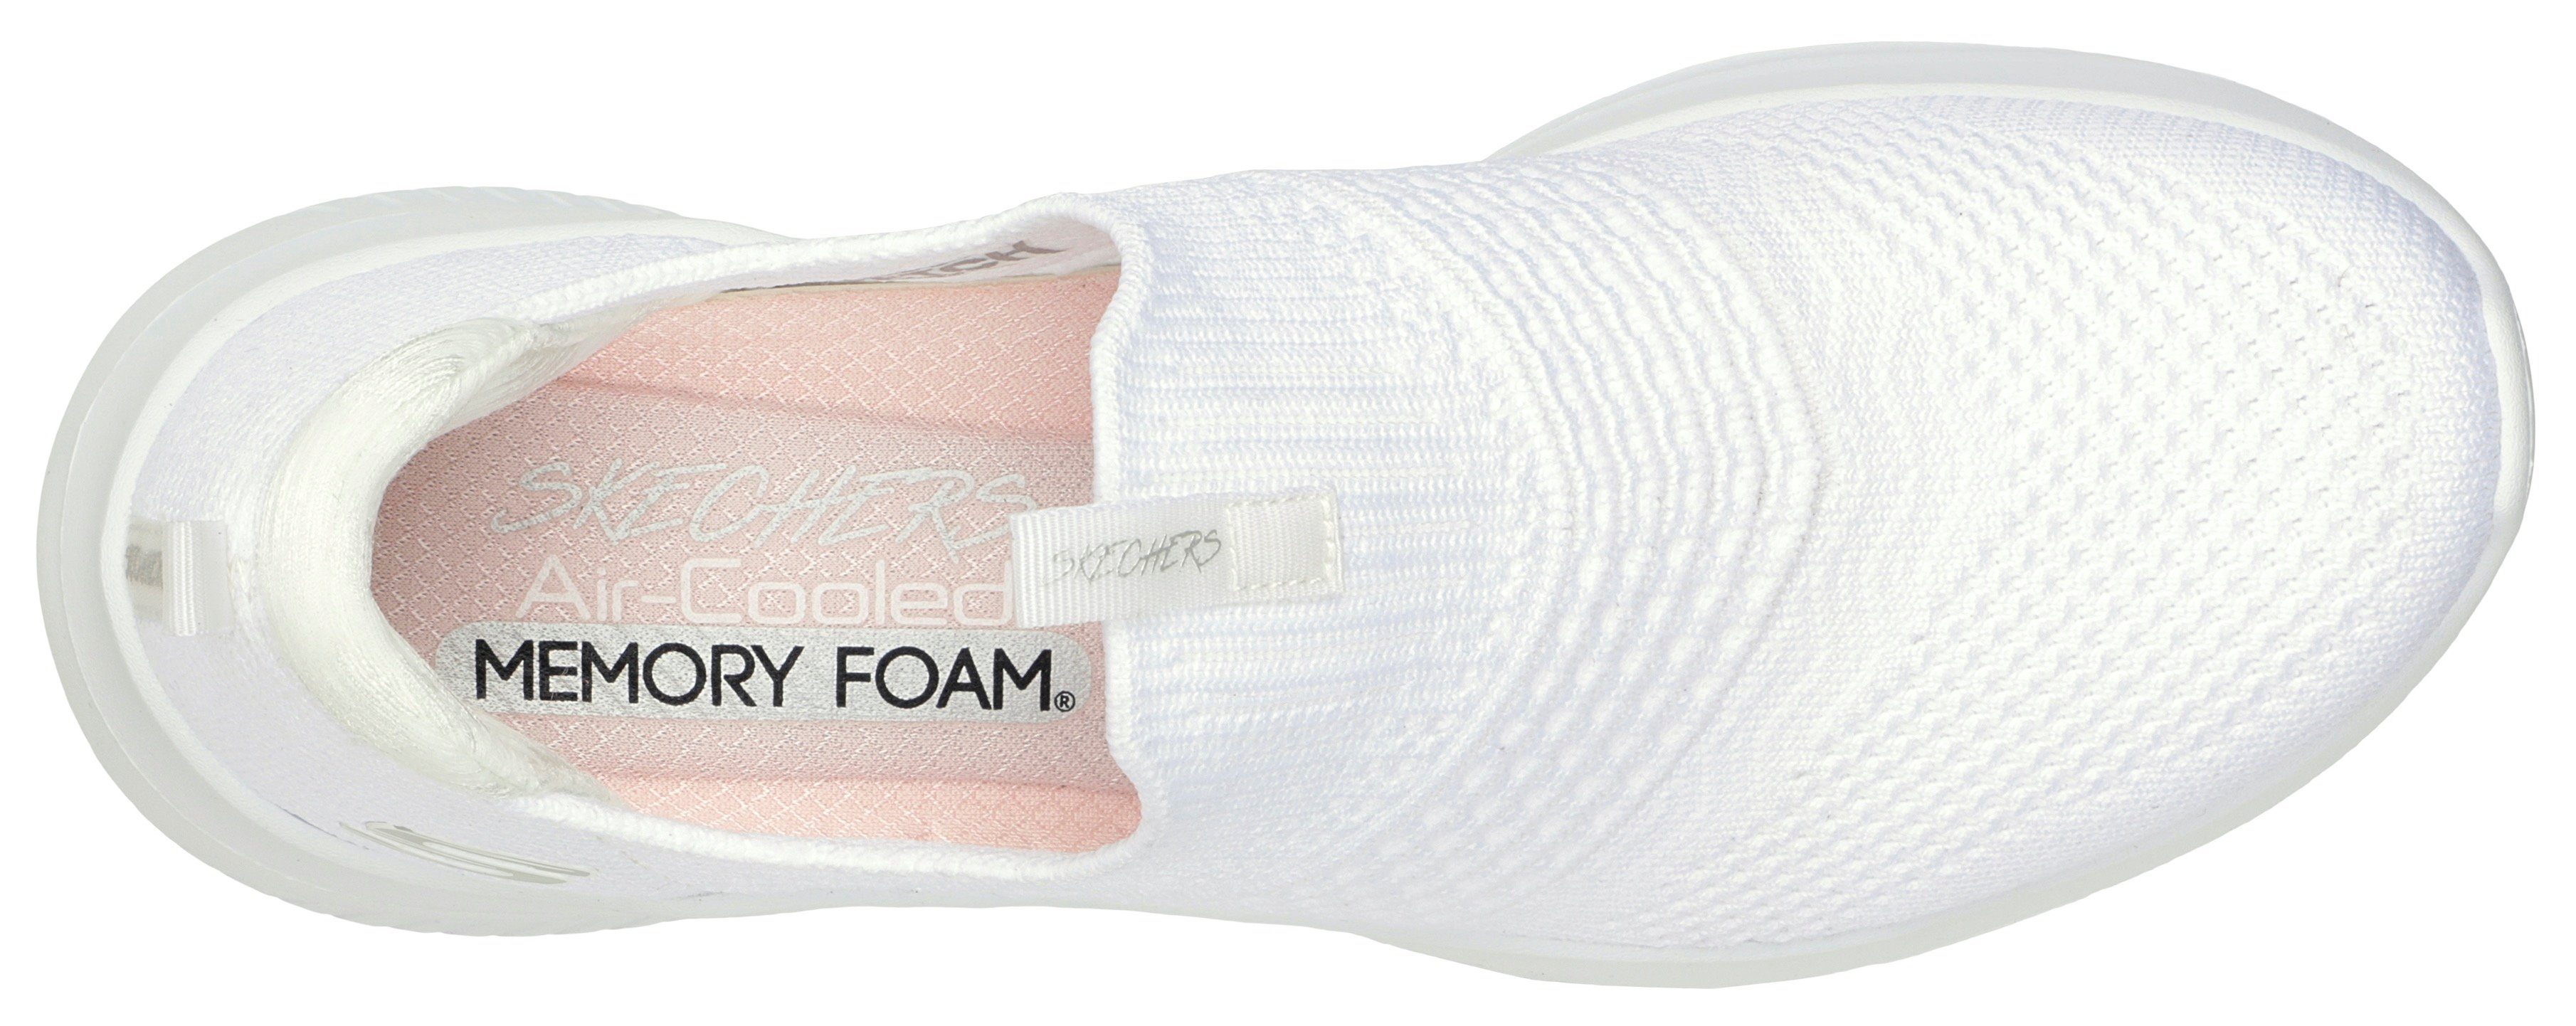 Skechers ULTRA FLEX Fersenpart Slip-On weiß mit CLASSY gepolstertem Sneaker 3.0 CHARM